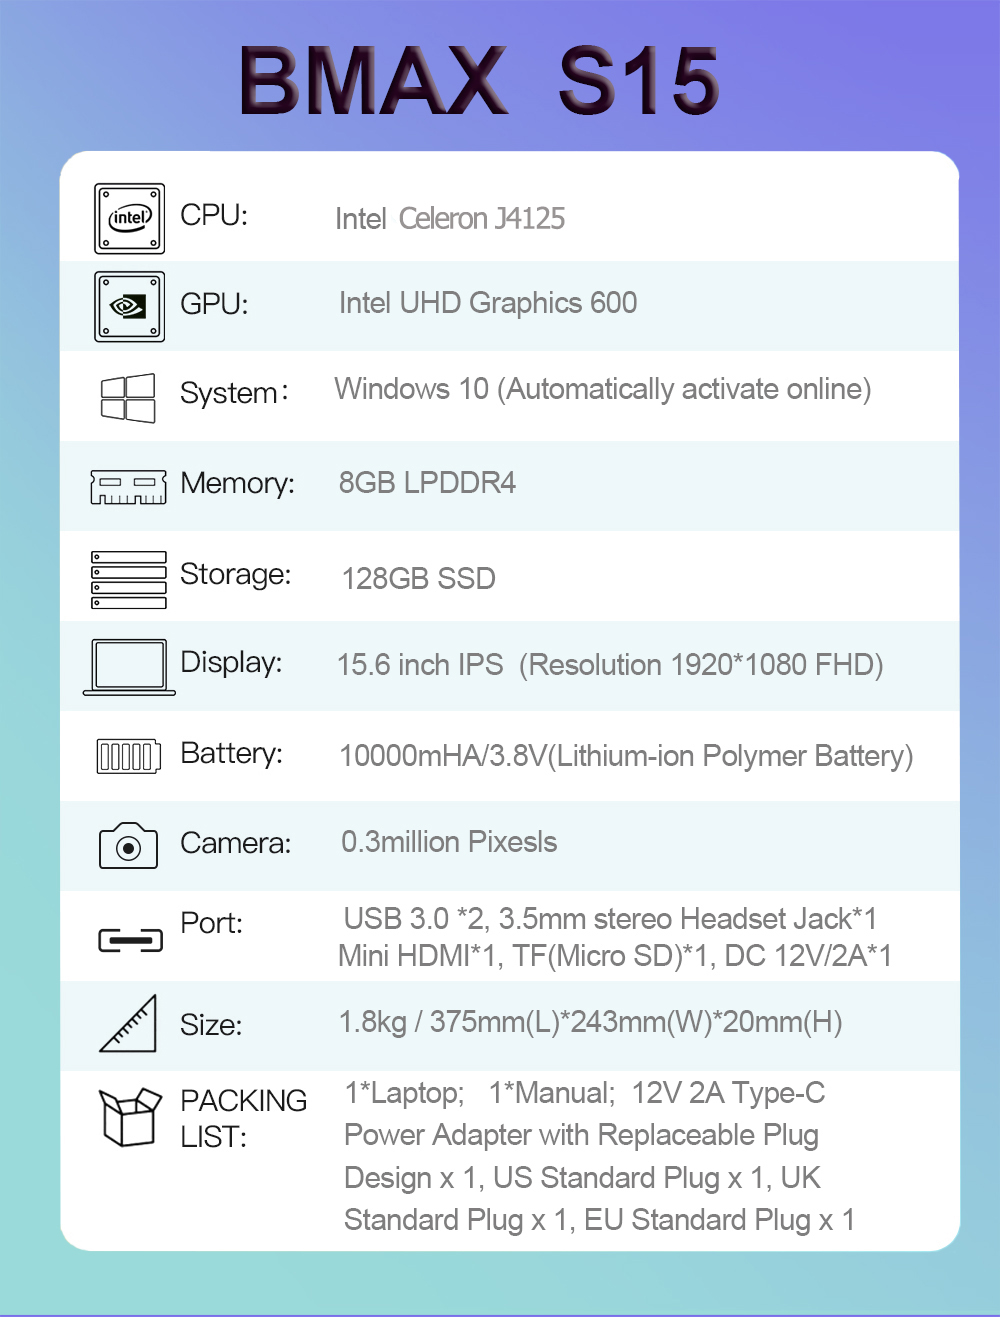 มุมมองเพิ่มเติมเกี่ยวกับ G Vivobook laptop โน้ตบุค คอมพิวเตอร์ครบชุด 8gb RAM DDR4 Intel Celeron J4125/core i5 i7 Computer rom 128gb ssd notebook ราคาถูก 15.6 นิ้ว ฟรี G Pack window10 pro โน๊ตบุ๊ค คอมแรงๆเล่นเกม